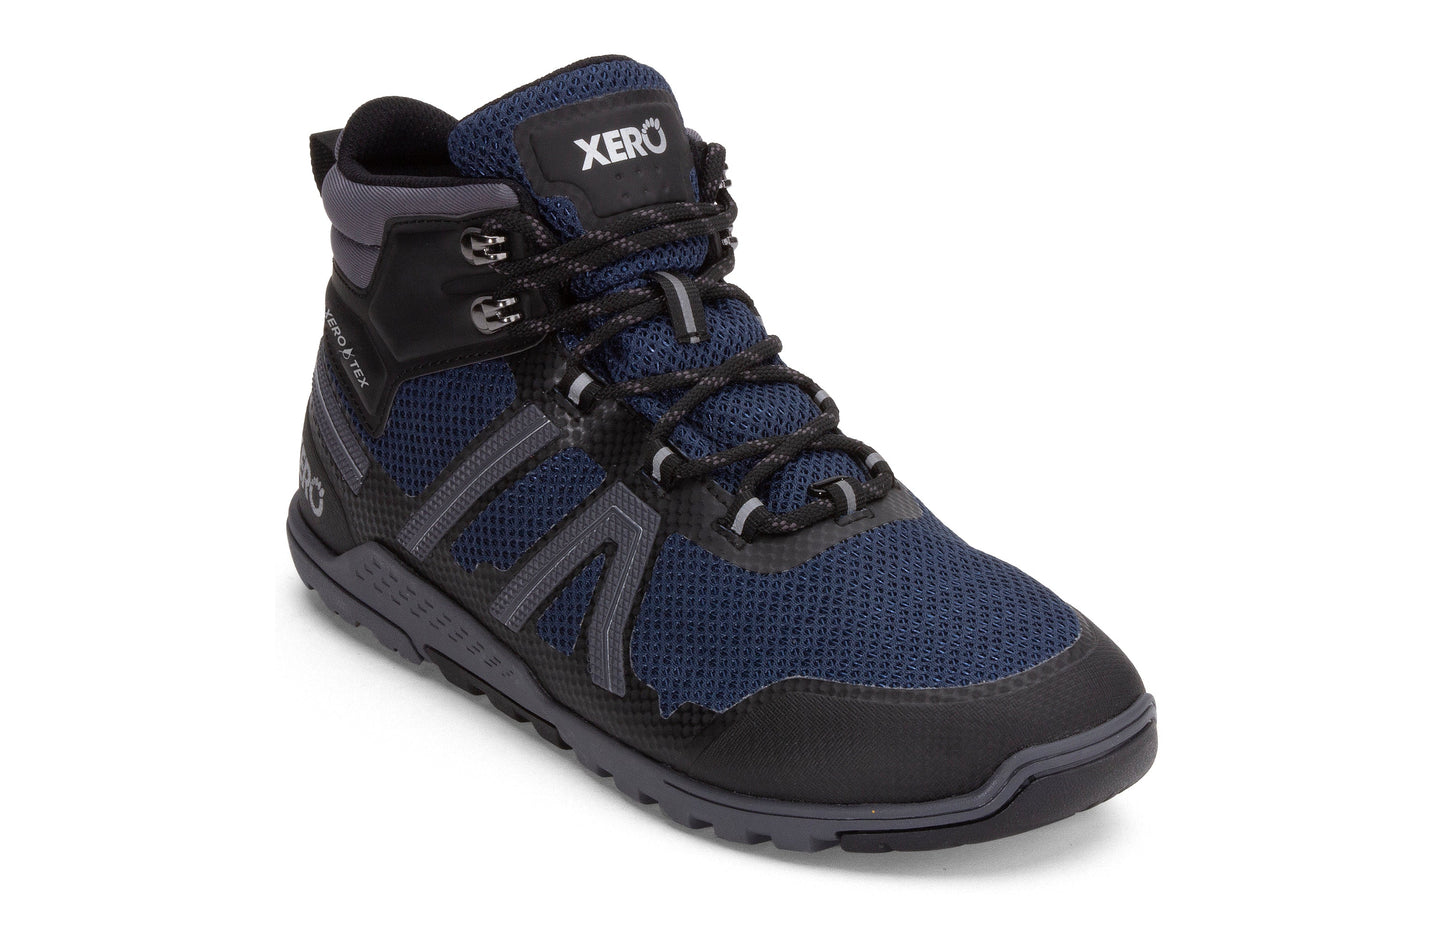 Xero Shoes Xcursion Fusion barfods støvler til mænd i farven moonlit blue / black, vinklet